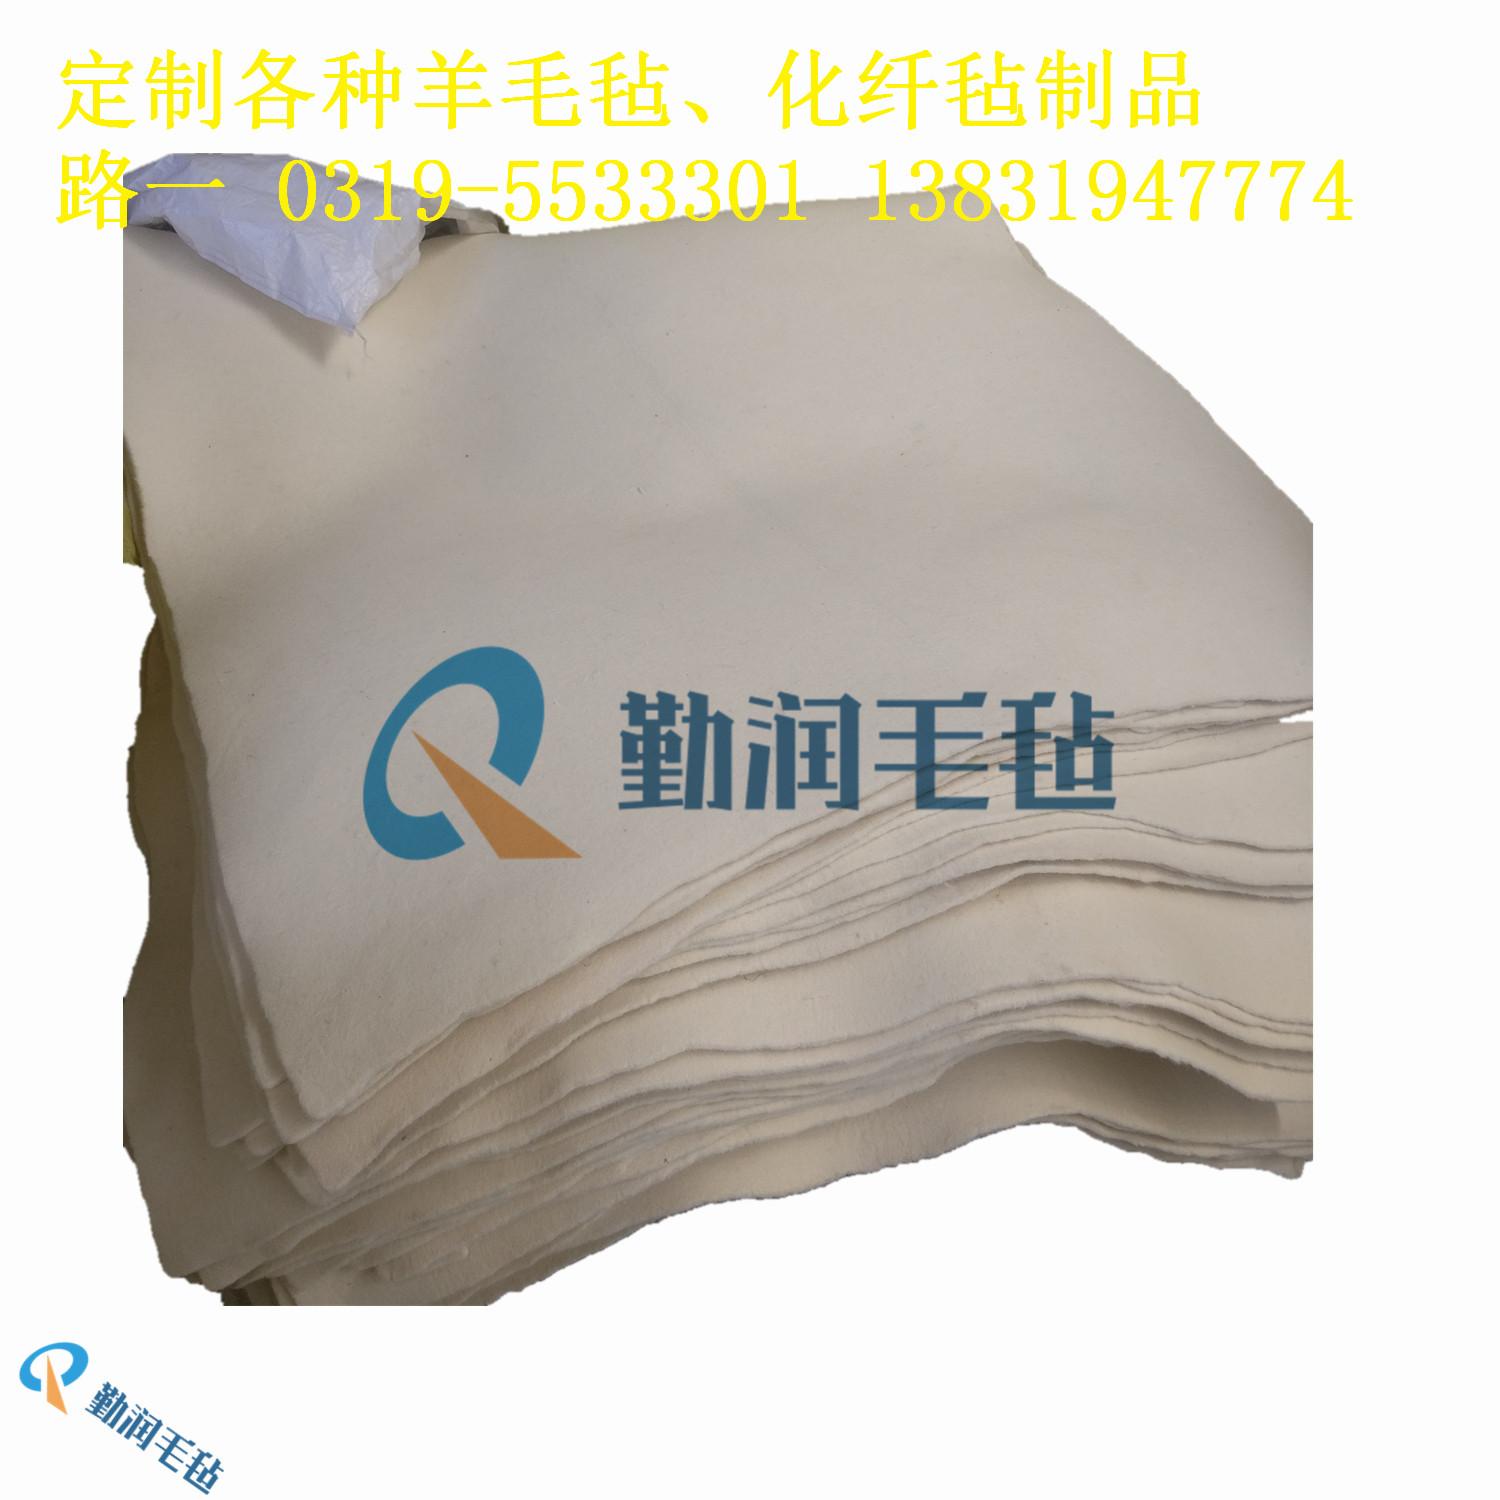 厂家直销杭州高密度工业细白羊毛毡上海密封减震过滤吸